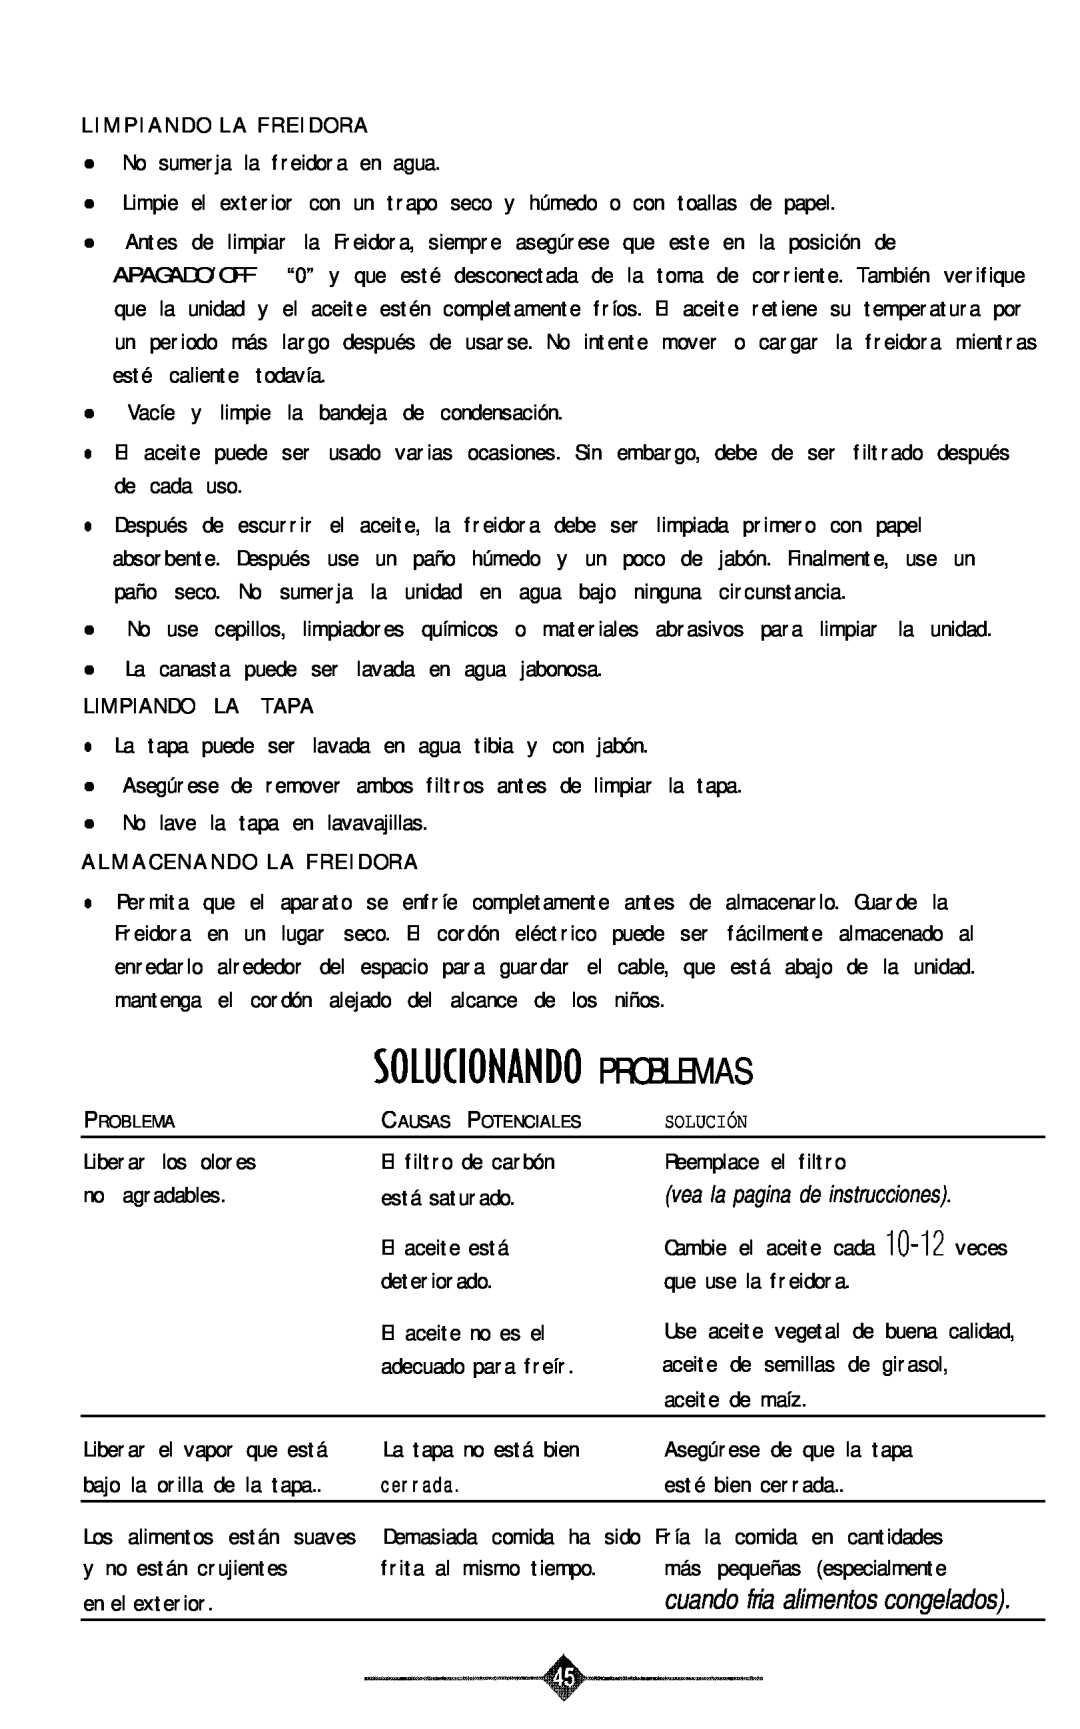 Sunbeam 3240, 3241 manual Problemas, Solkionando 